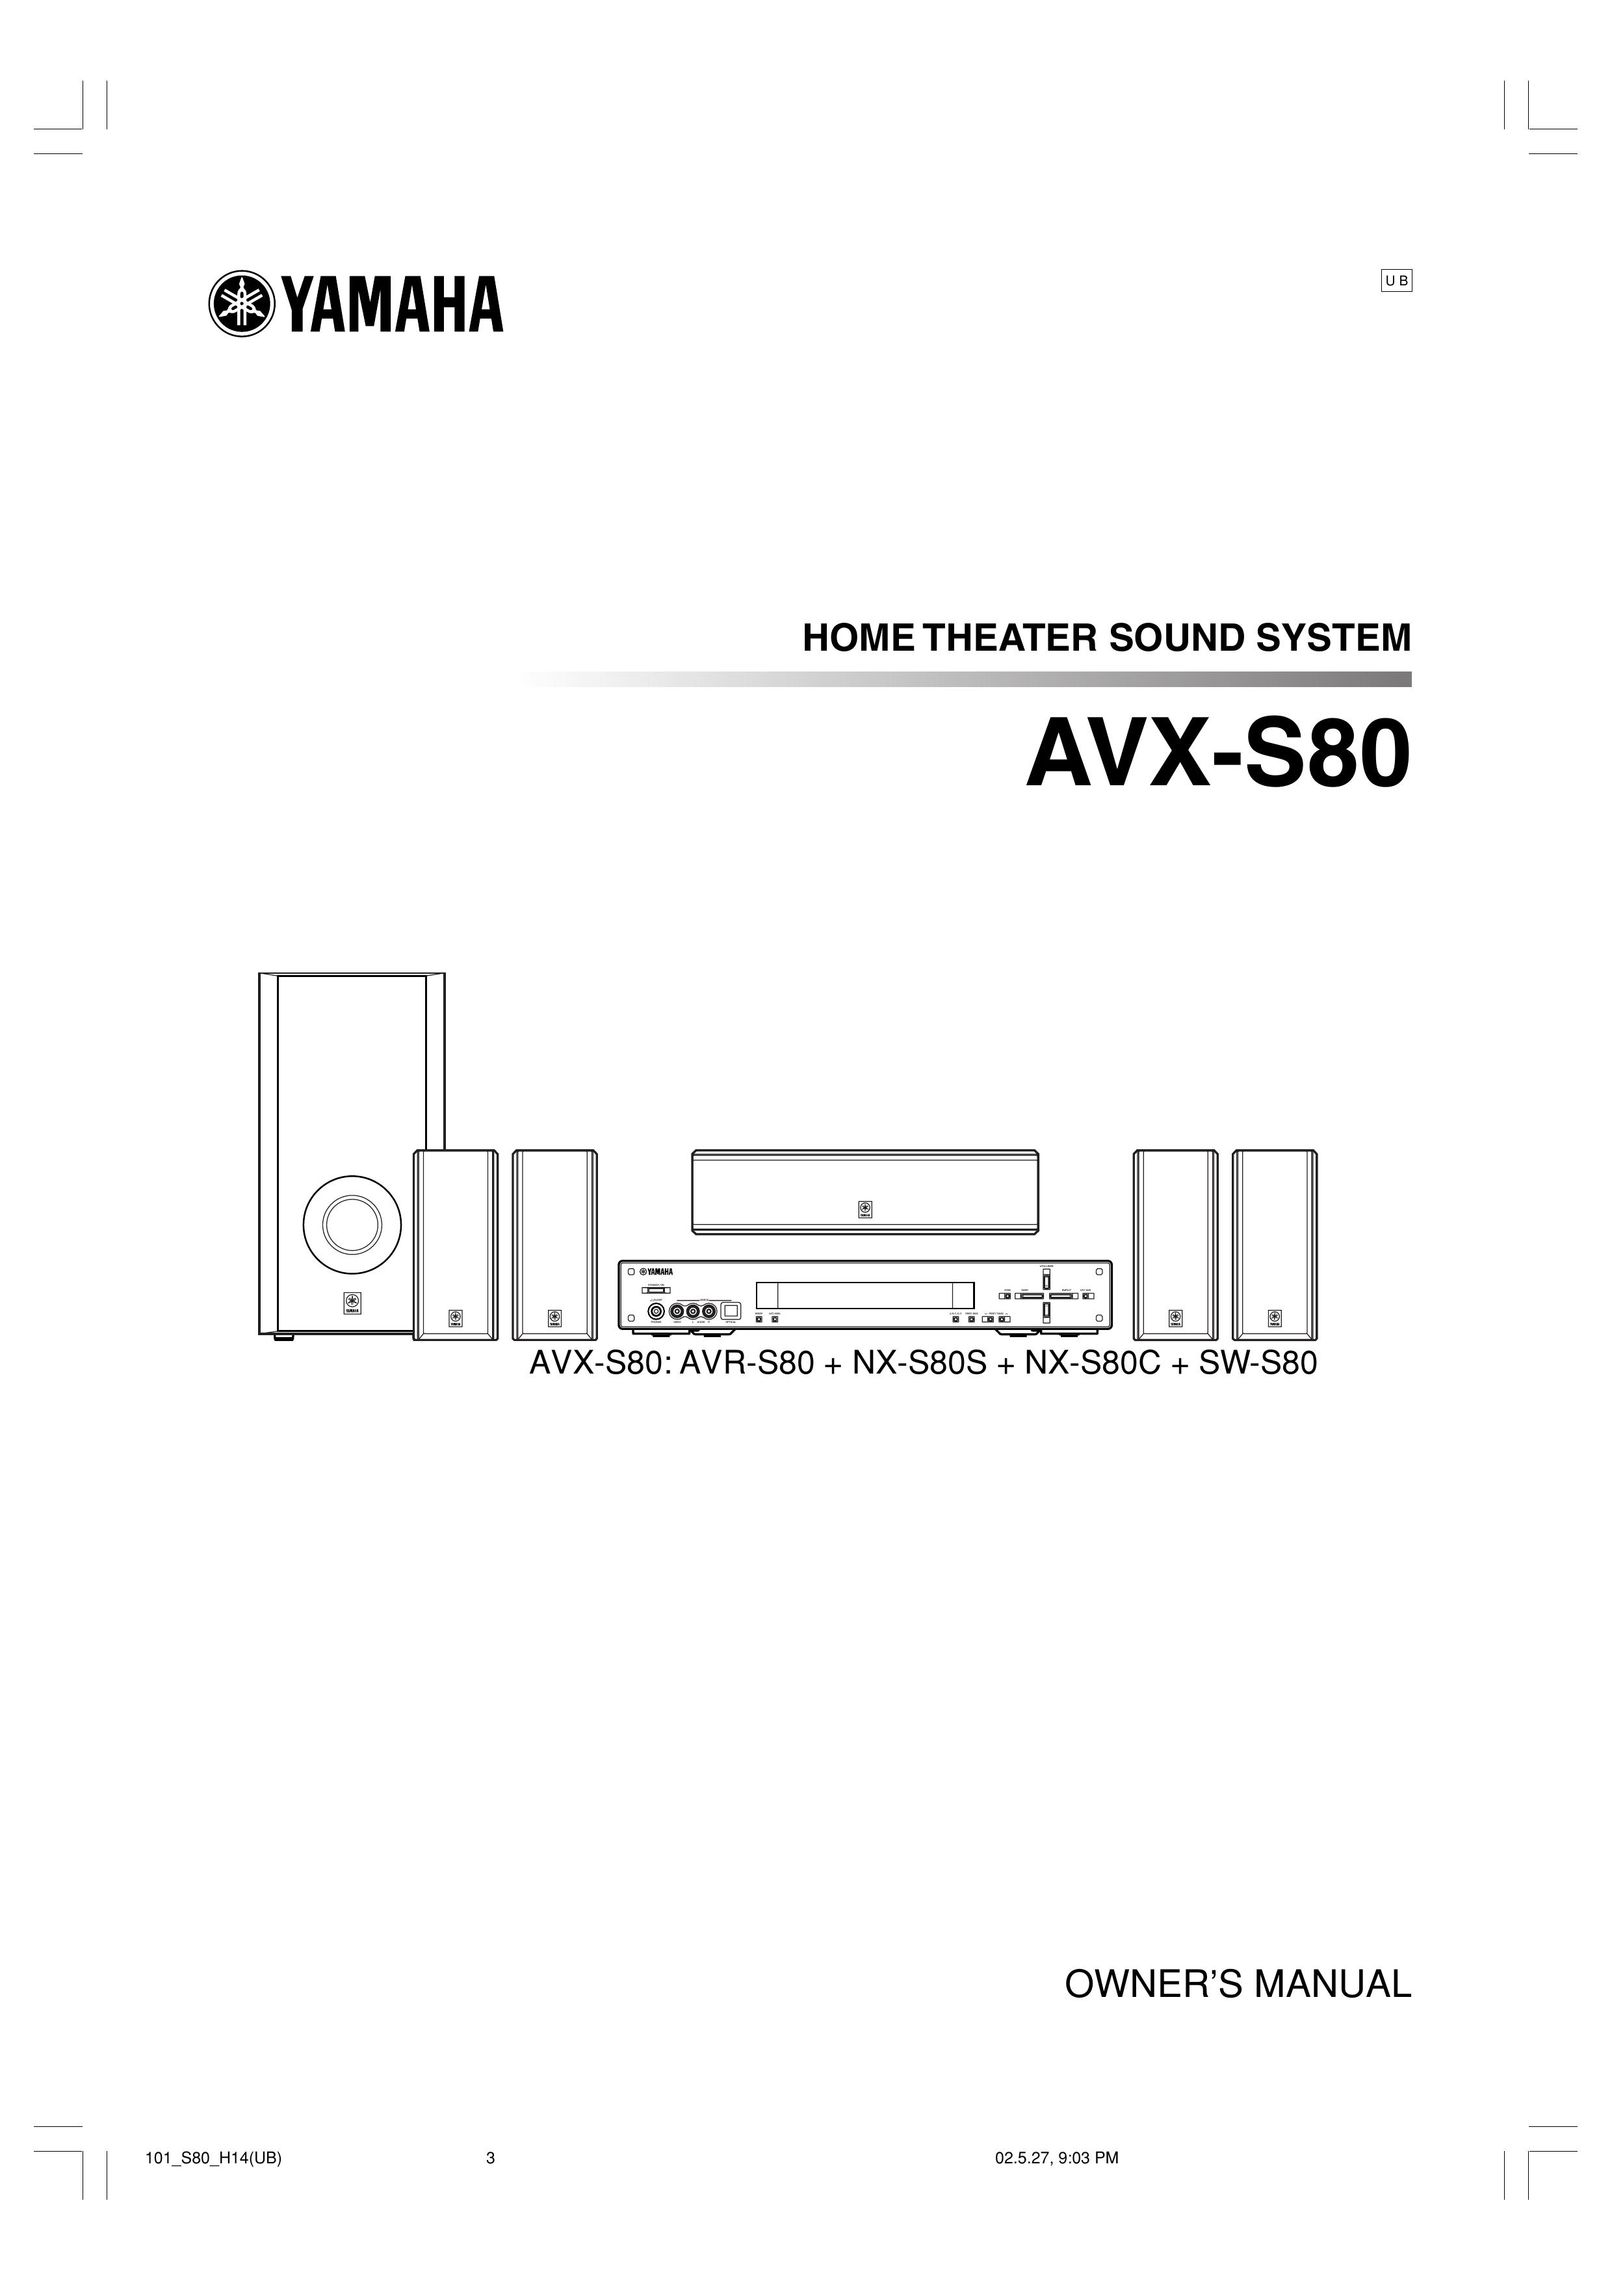 Yamaha AVX-S80 Speaker System User Manual